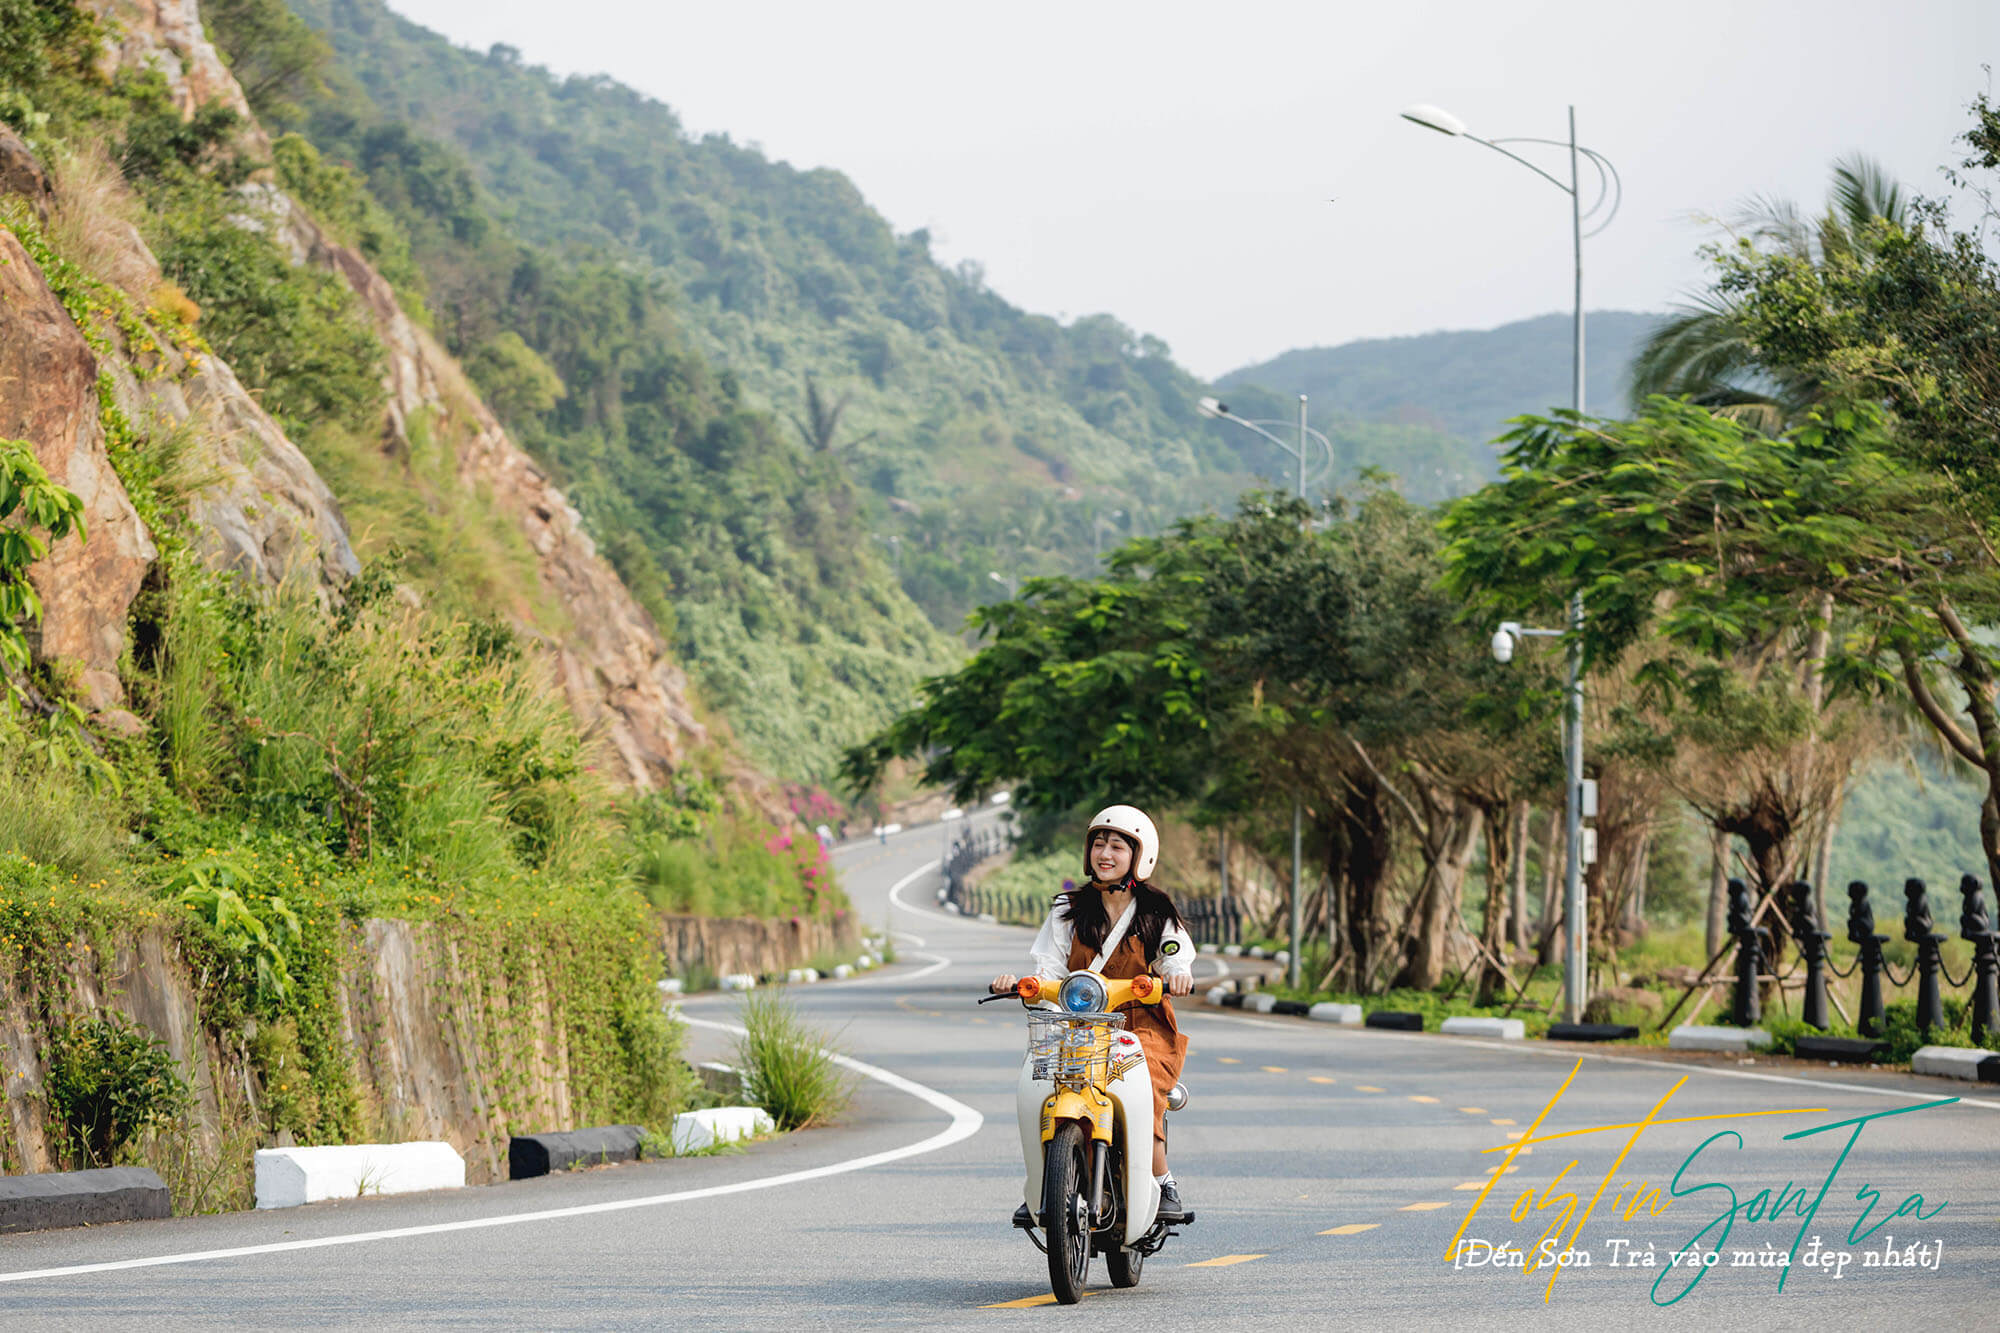 Đến Sơn Trà vào mùa đẹp nhất - Cổng thông tin du lịch thành phố Đà Nẵng